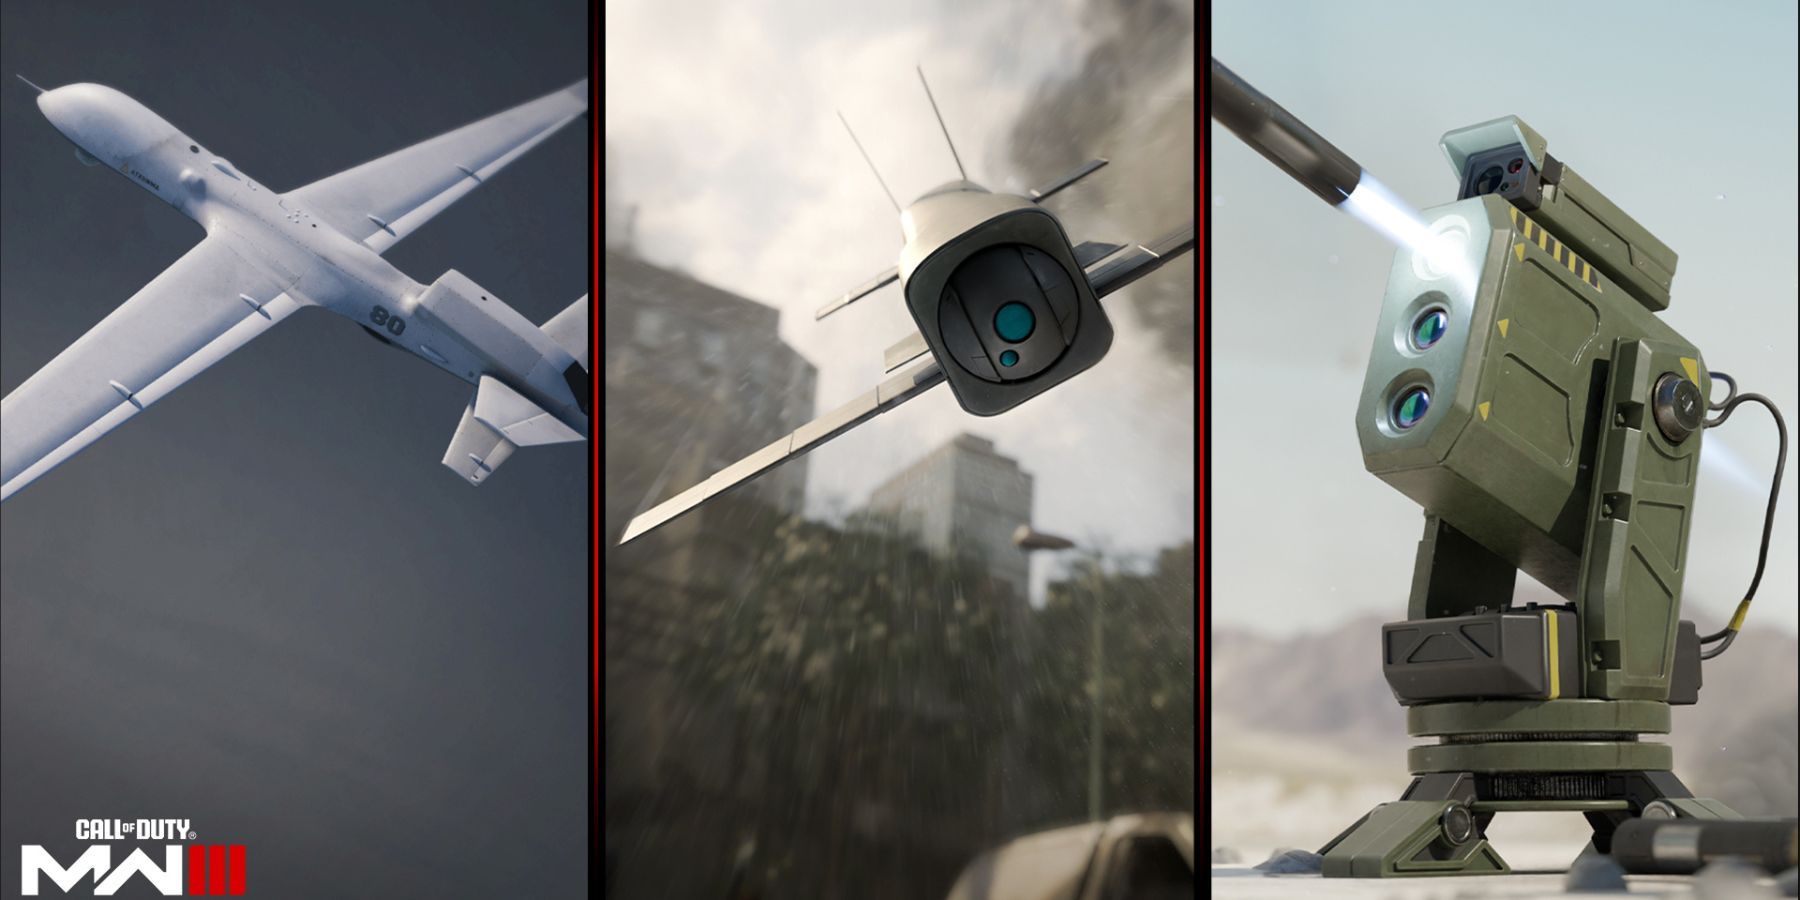 uav, sam turret, and mosquito drone in modern warfare 3.